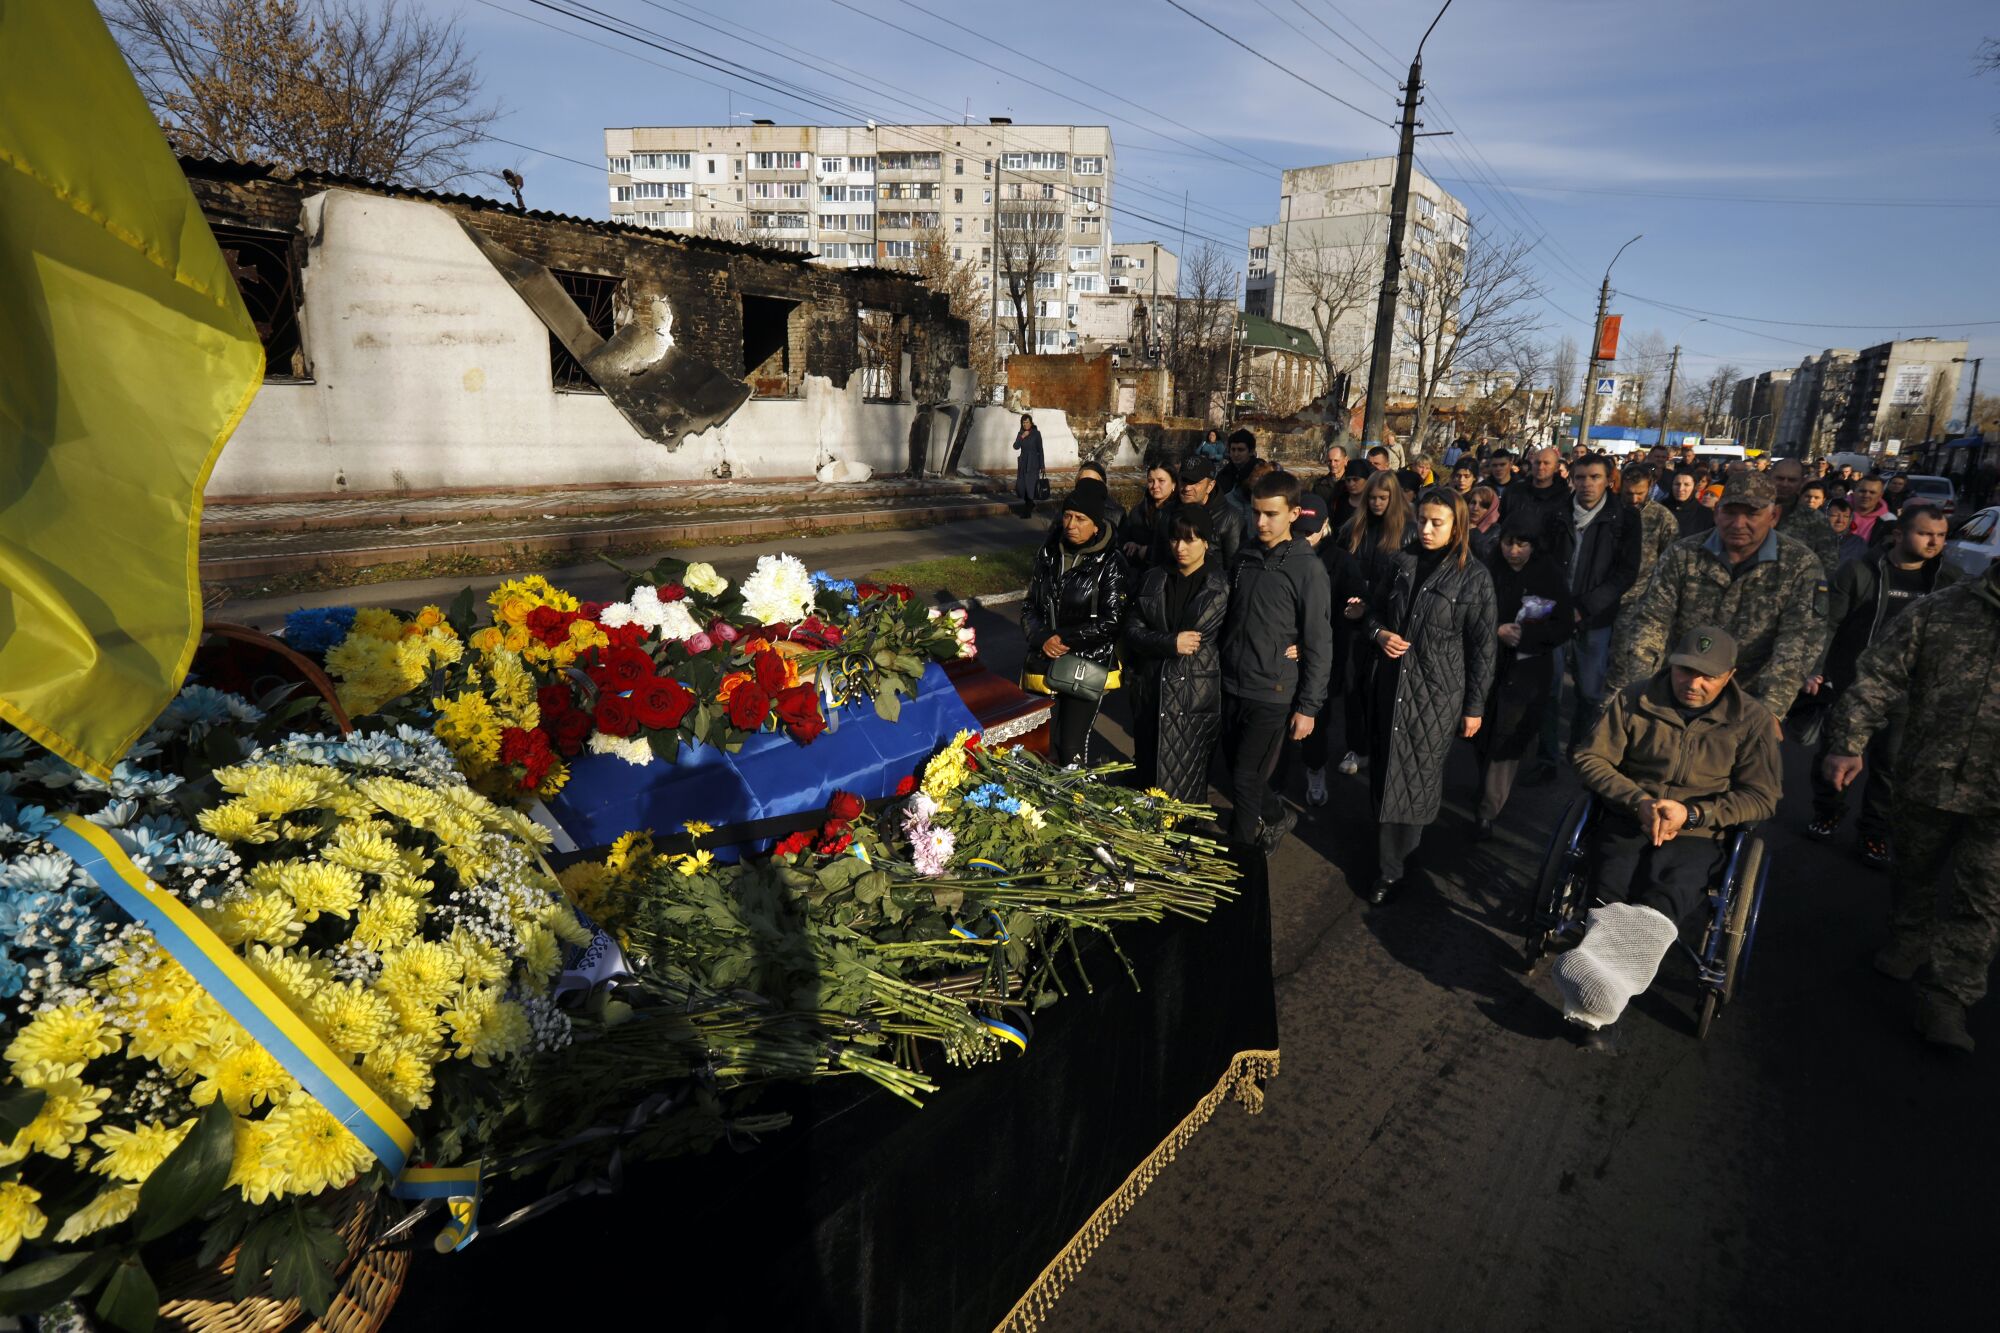 Koyu renk giysili veya askeri kamuflajlı bir grup insan bir şehir caddesinde çiçeklerle kaplı bir tabutu takip ediyor.